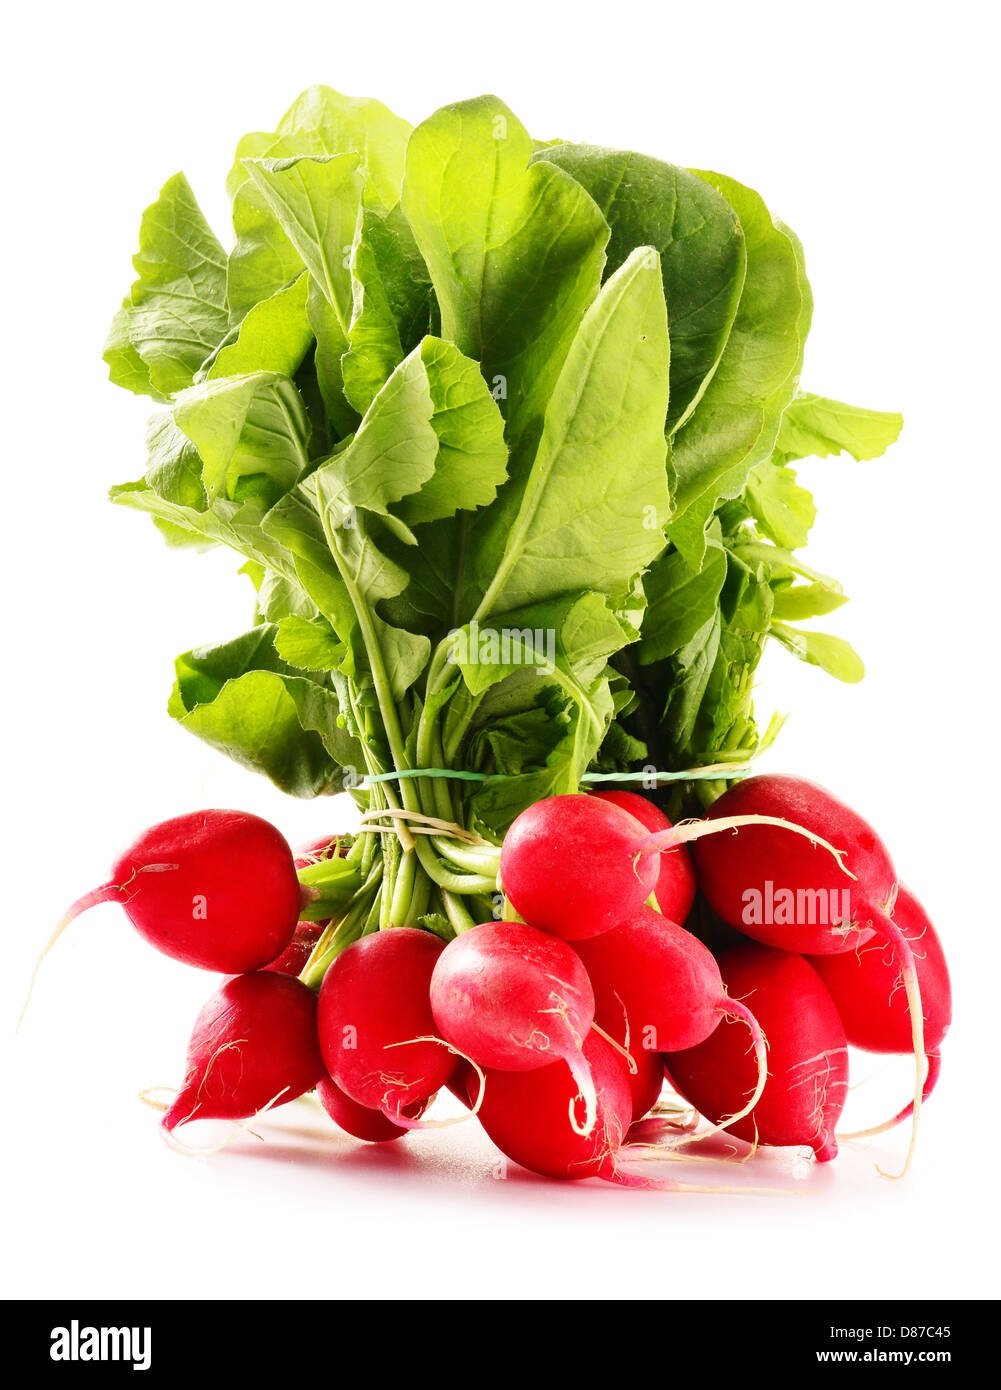 Bunch of radish isolated on white background Stock Photo